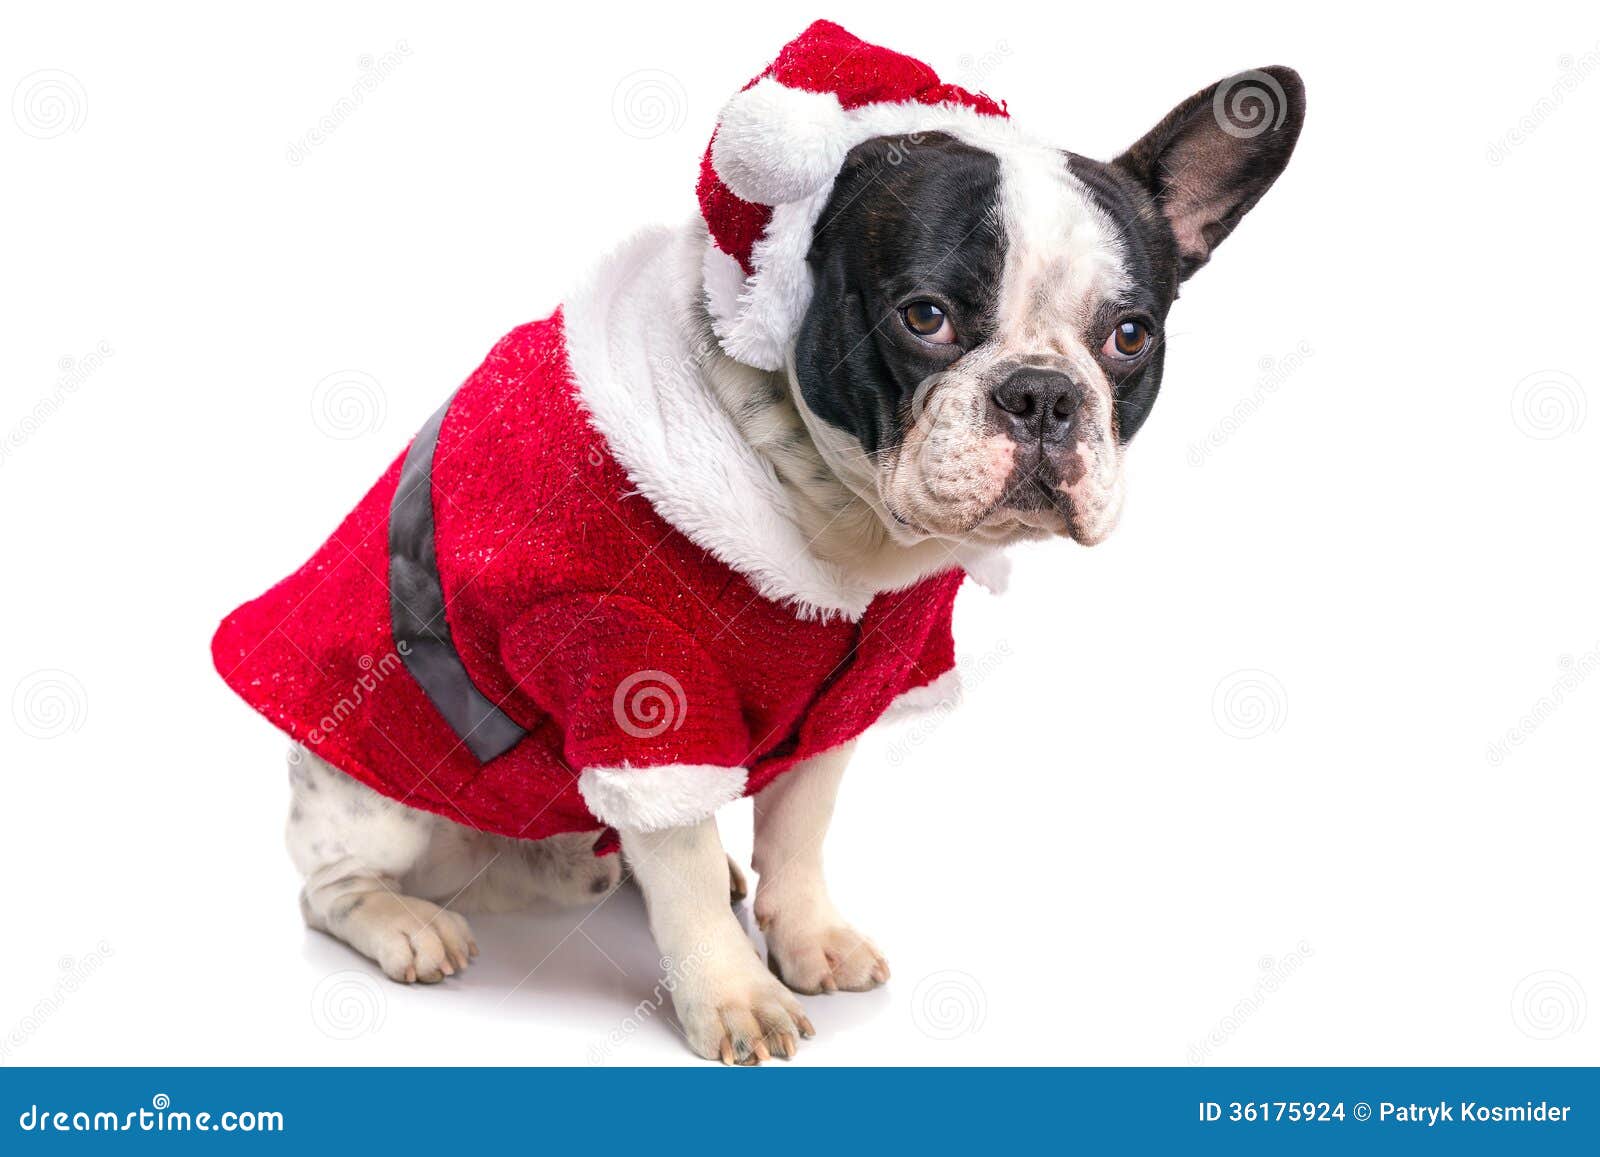 French Bulldog In Santa Costume Stock Photo Image of